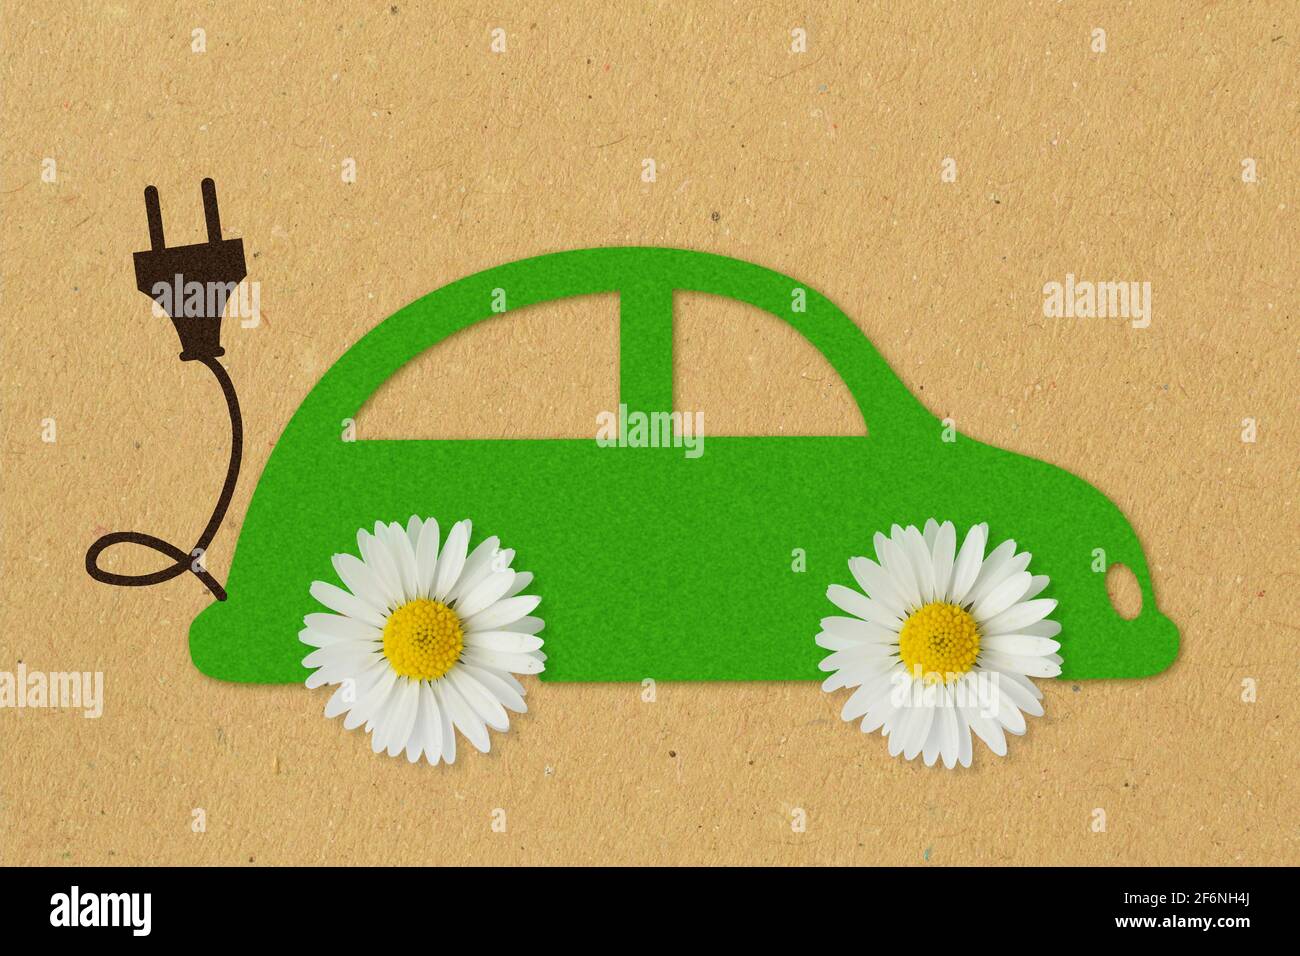 Grünes Papierauto mit Gänseblümchen-Blumen und elektrischem Stecker an  Hintergrund aus recyceltem Papier - Konzept von Elektroauto und Ökologie  Stockfotografie - Alamy